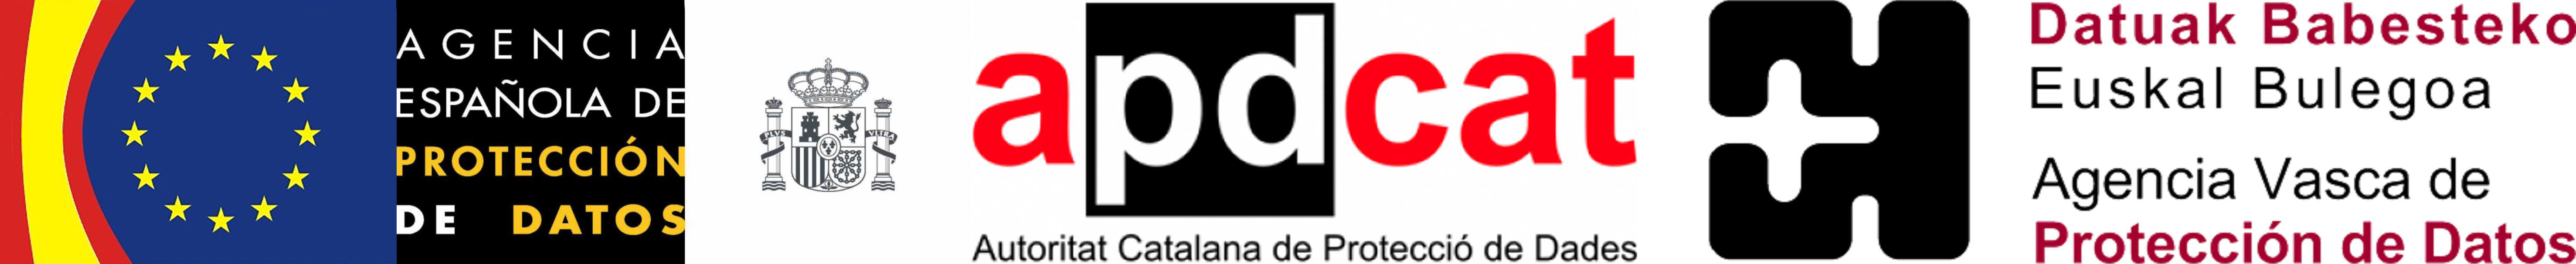 Sigla Agenția Spaniolă pentru Protecția Datelor, Autoritat Catalana de Protecció de Dades și Datuak Babesteko Euskal Bulegoa